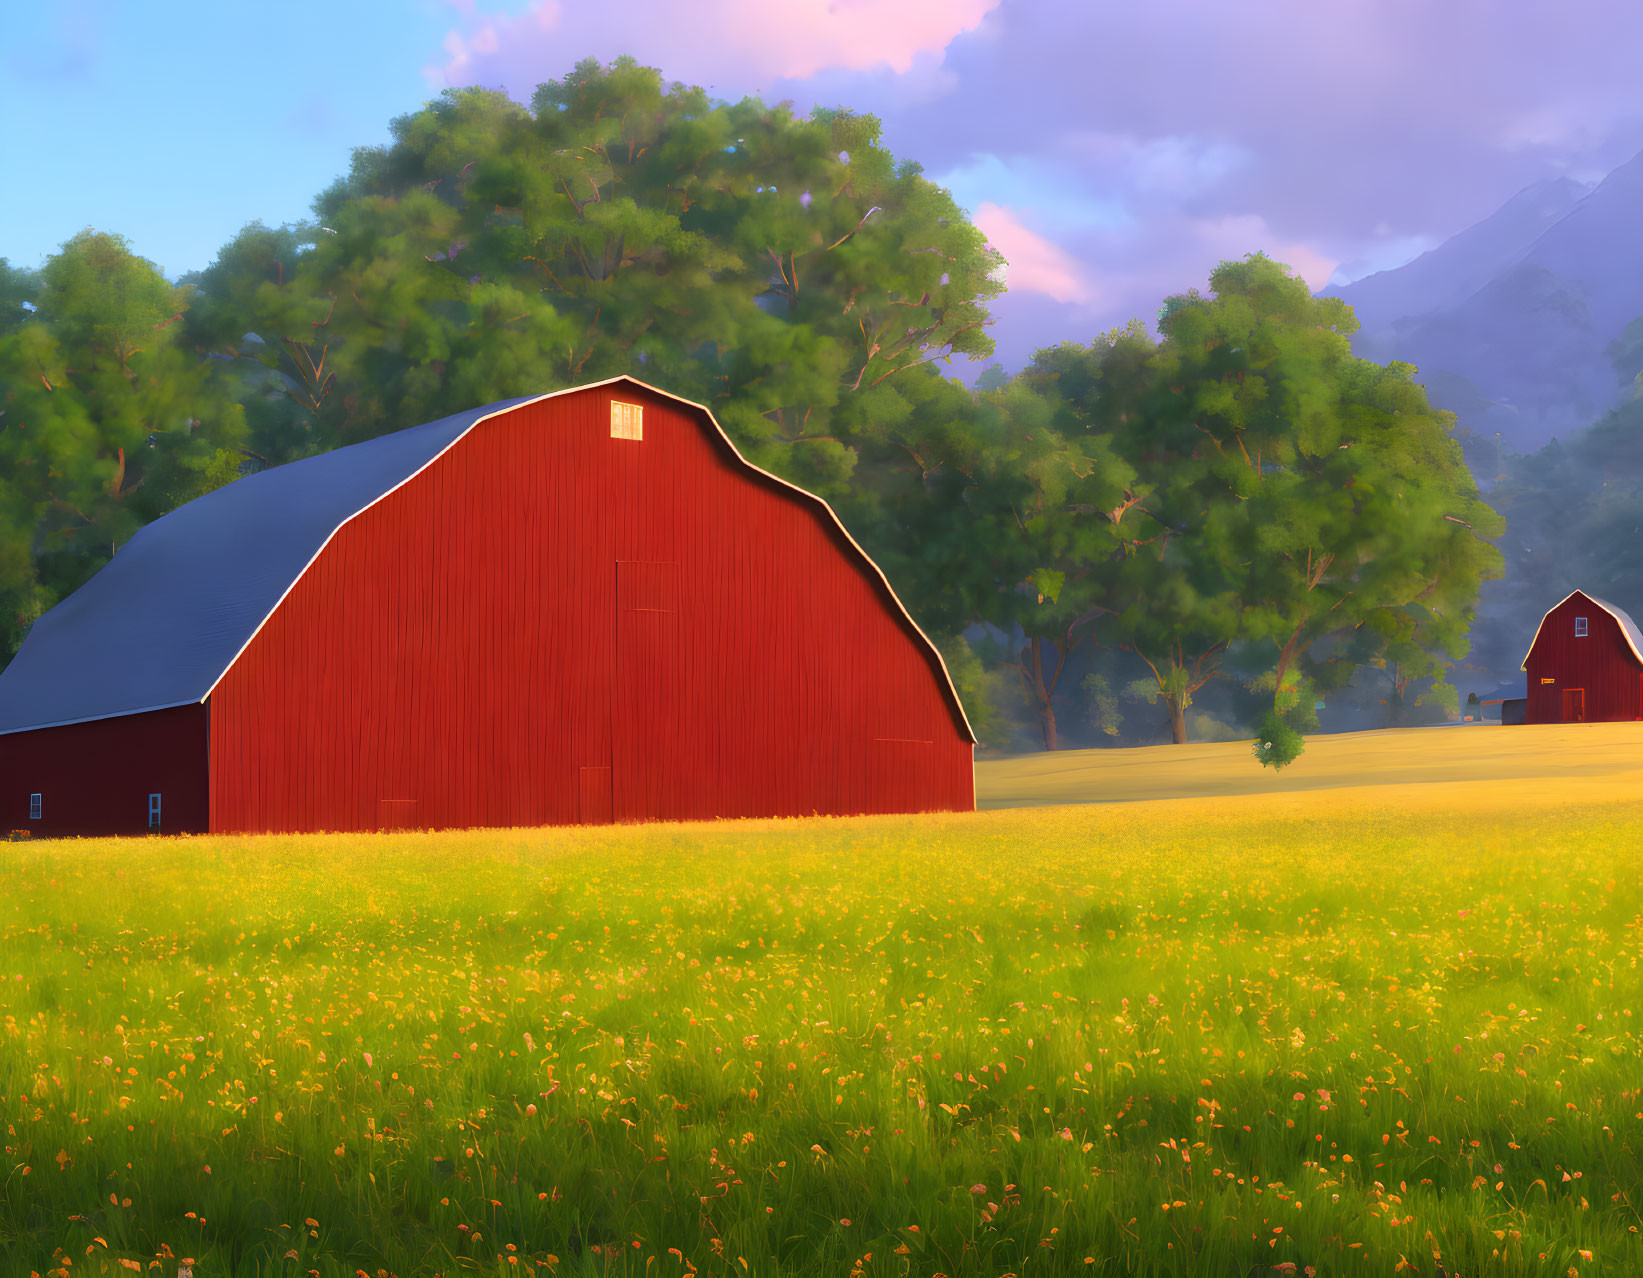  A Majestic Red Barn in Serene Green Fields